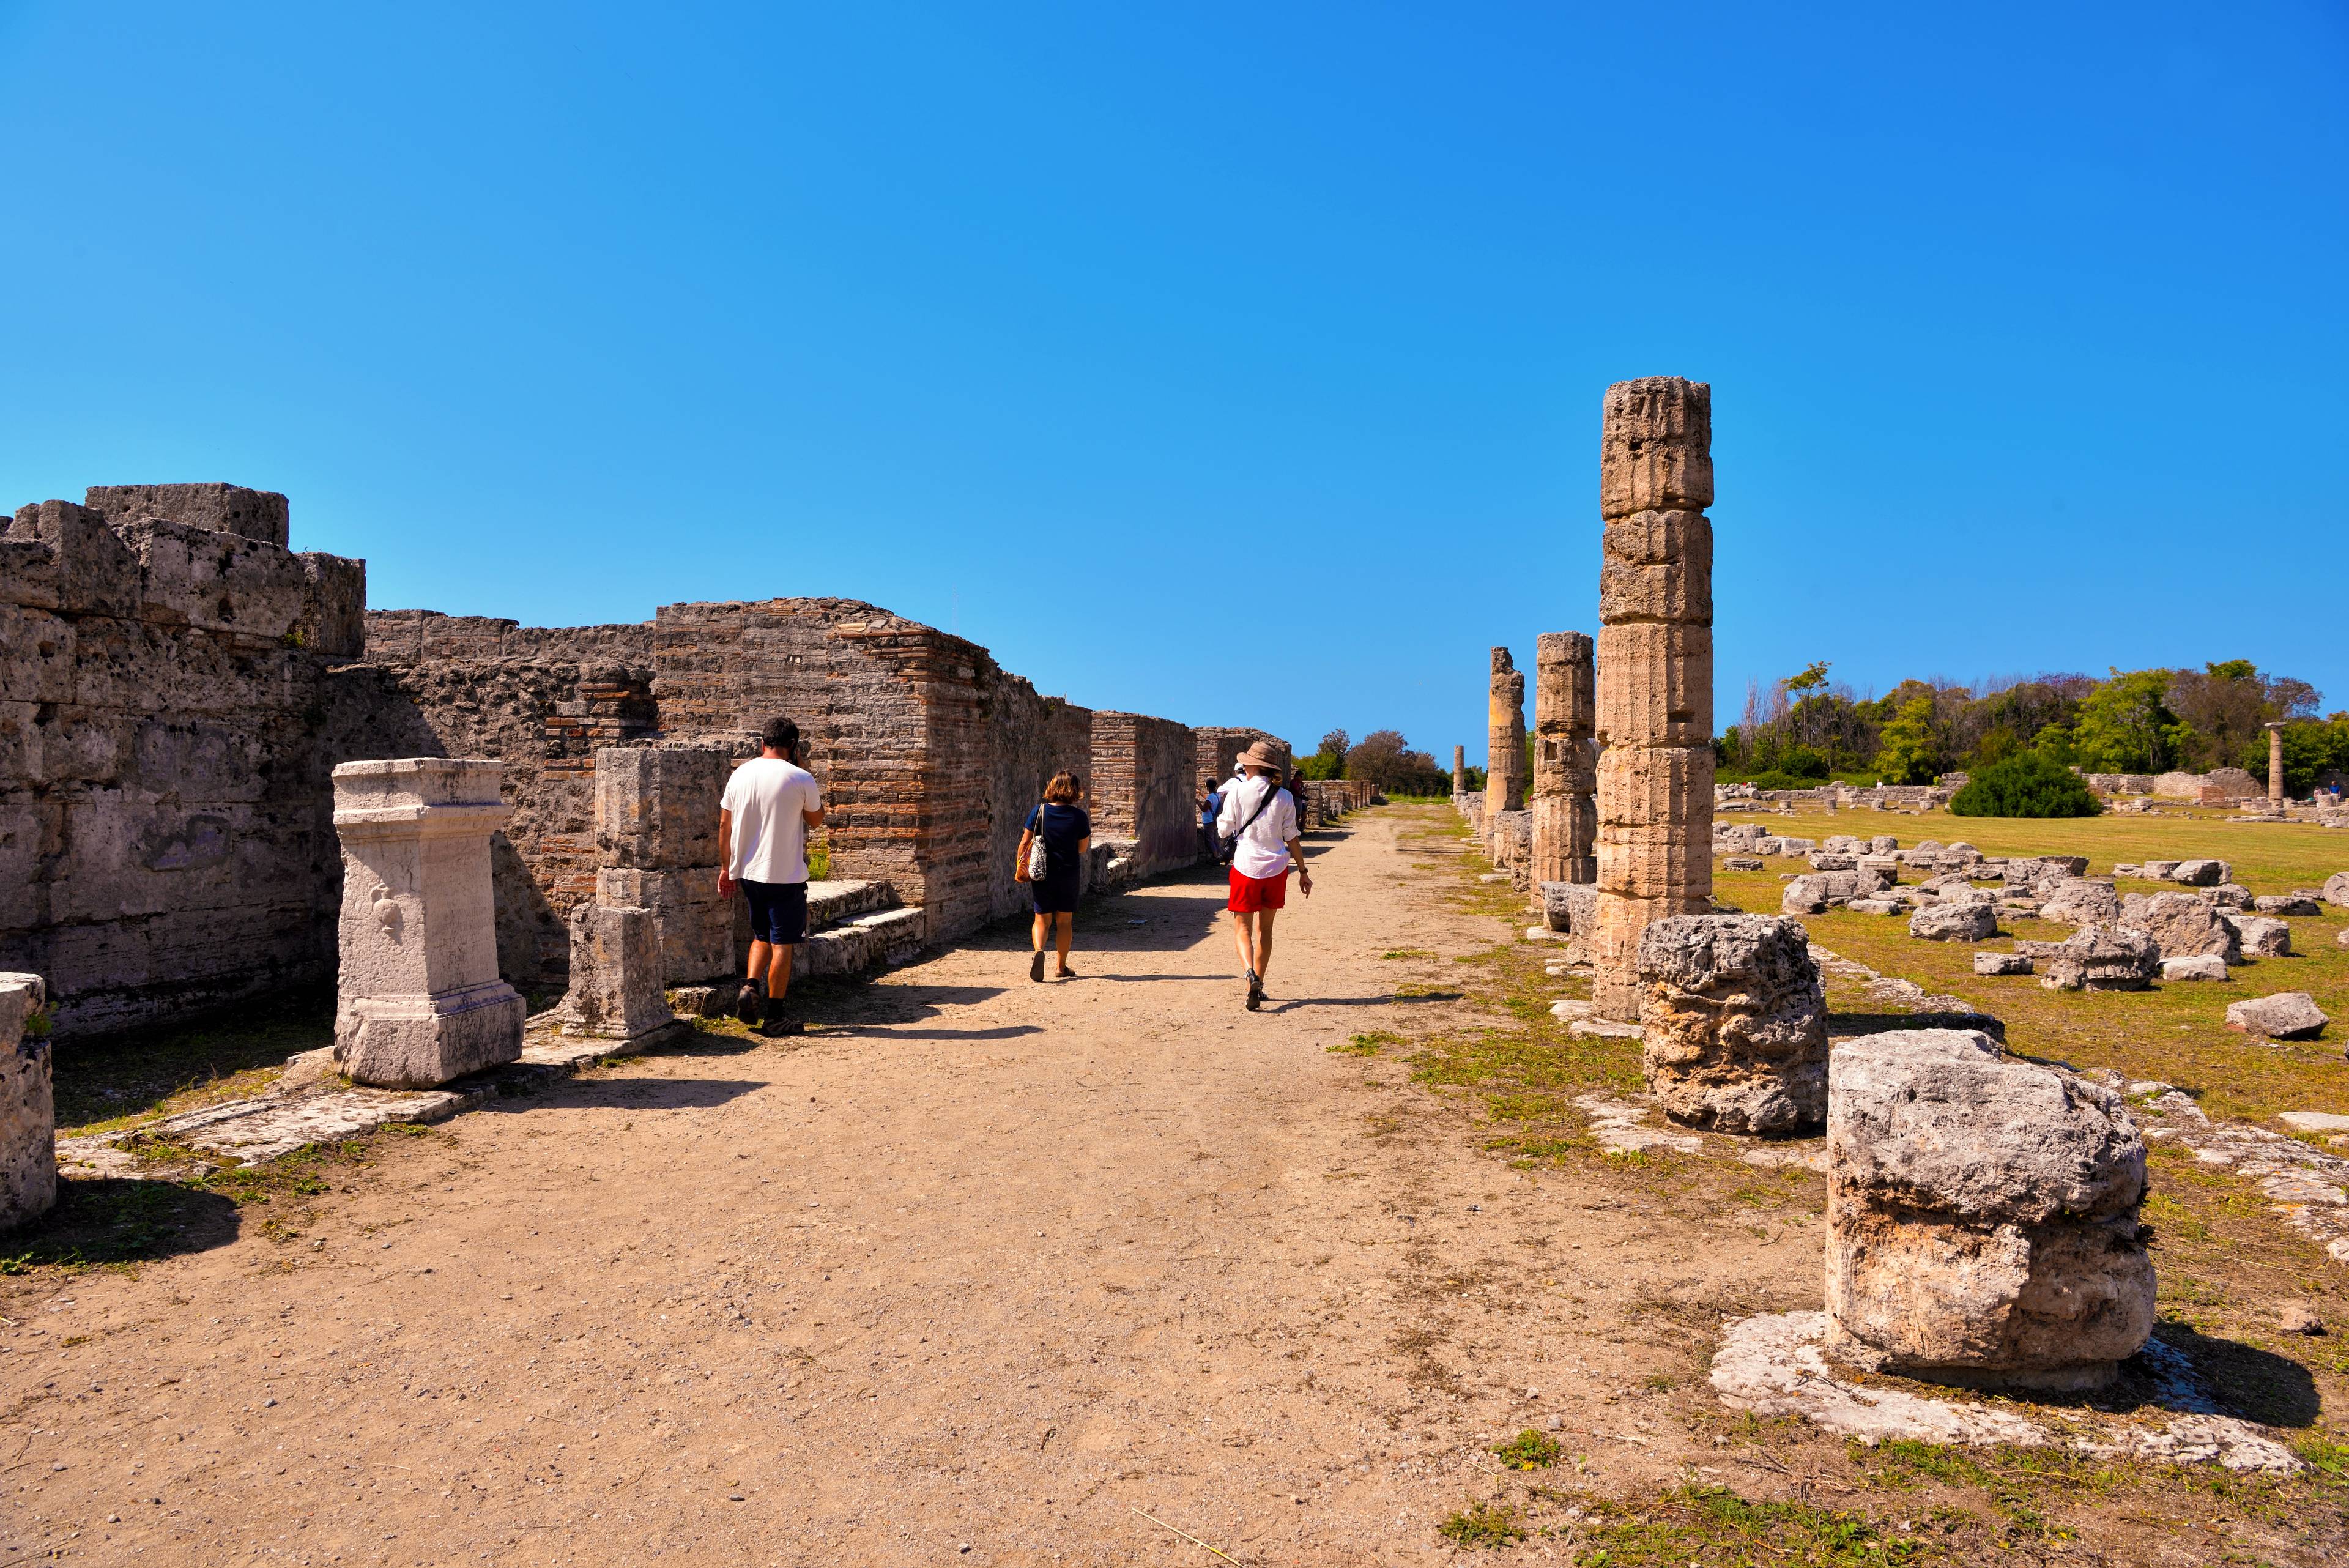 turisti nel sito archeologico di paestum